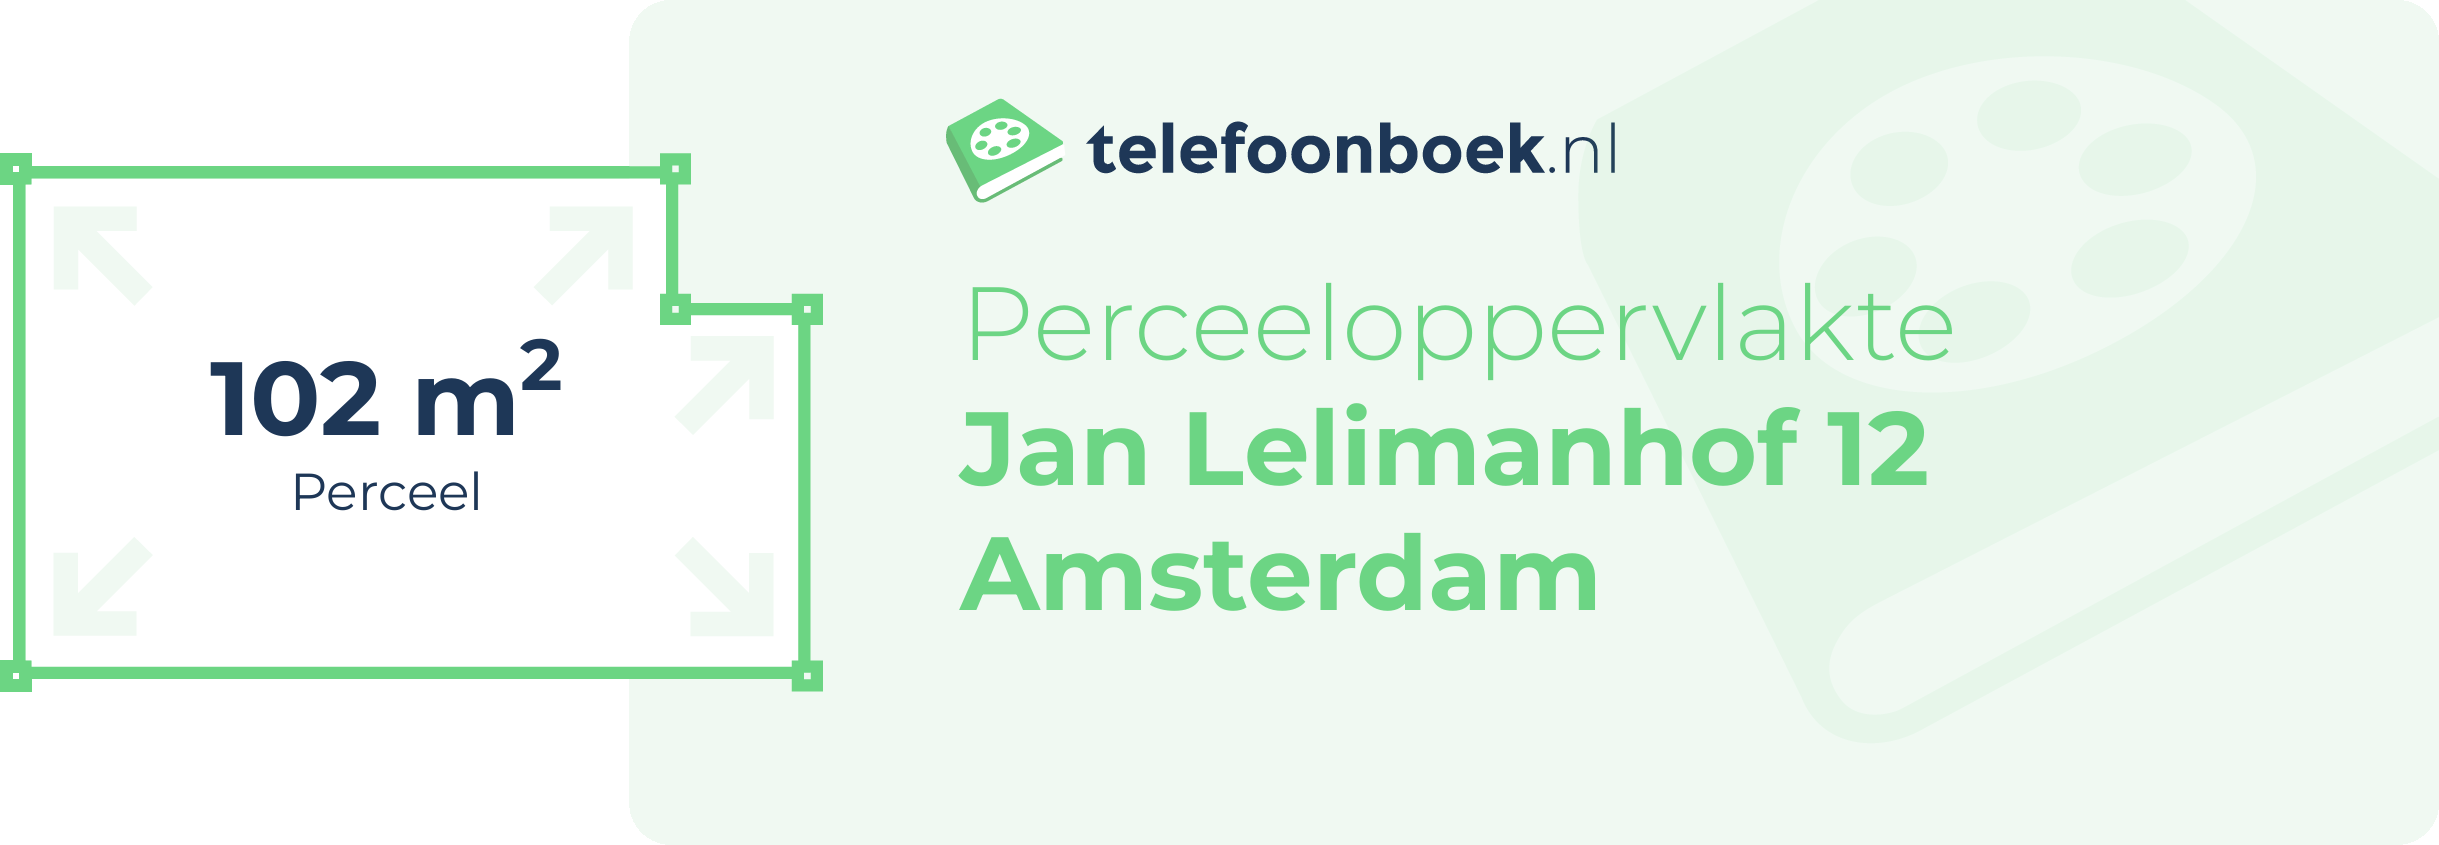 Perceeloppervlakte Jan Lelimanhof 12 Amsterdam